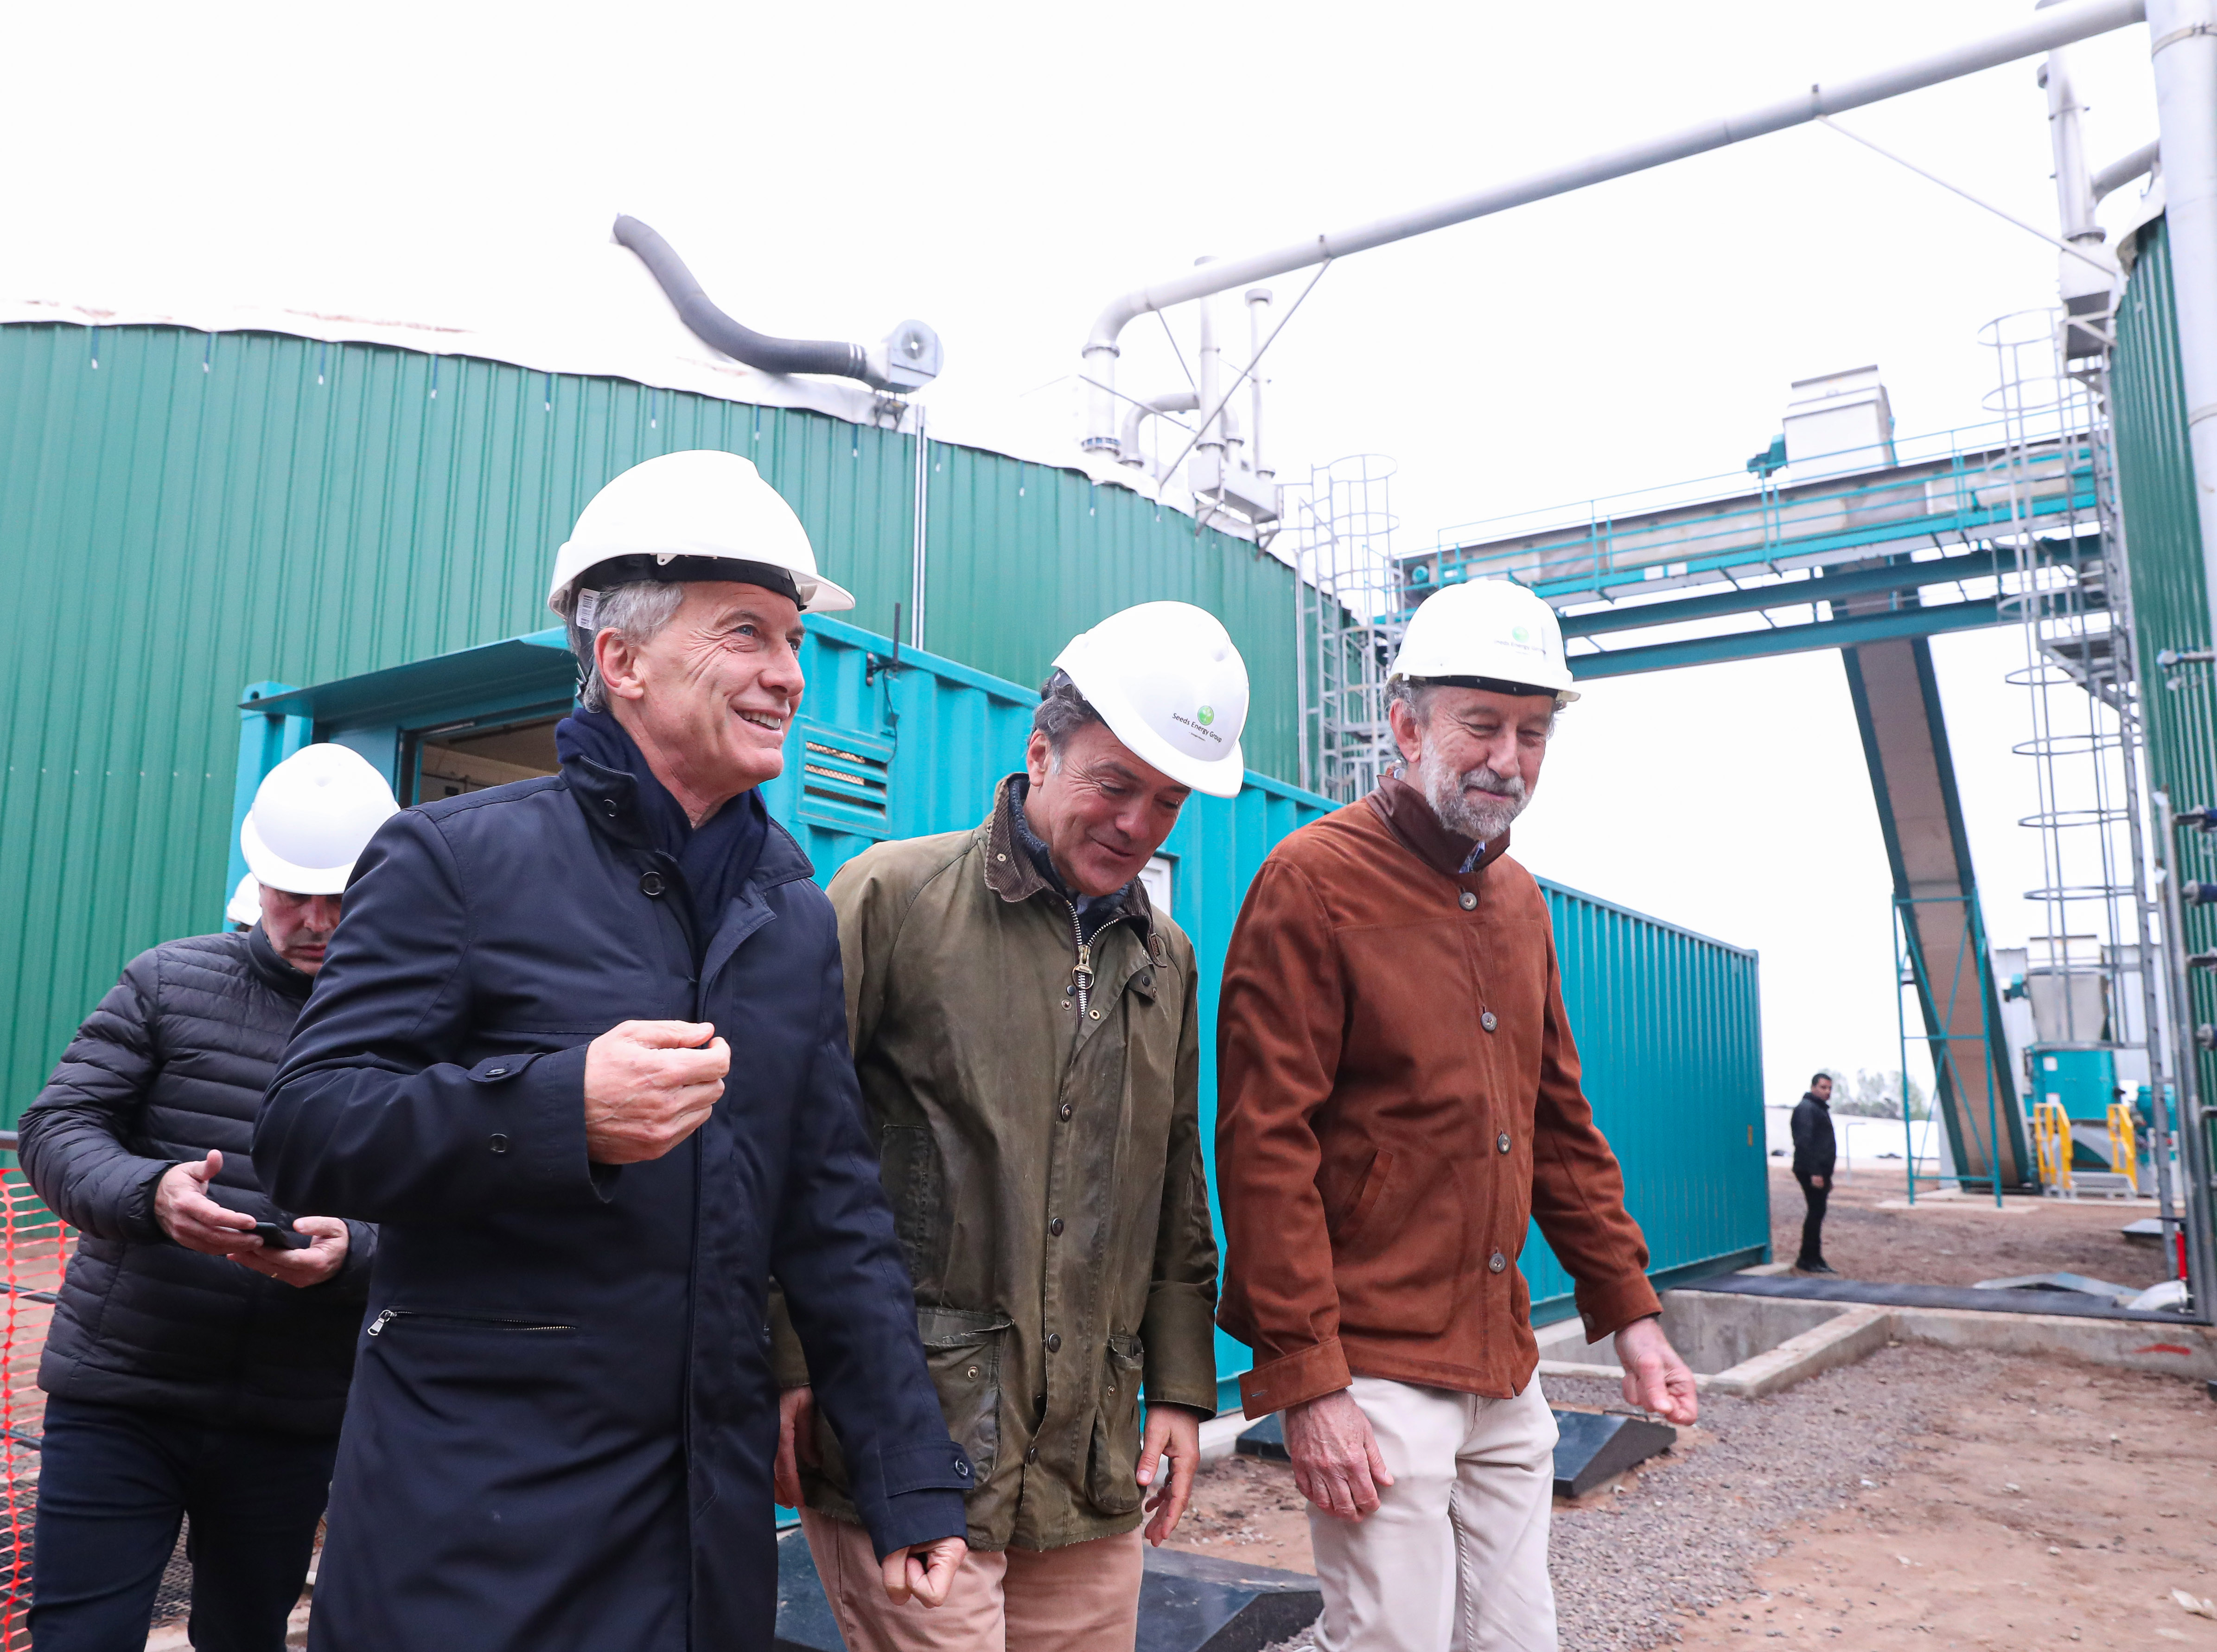 El presidente Macri visitó las obras de construcción de una central térmica en Pergamino